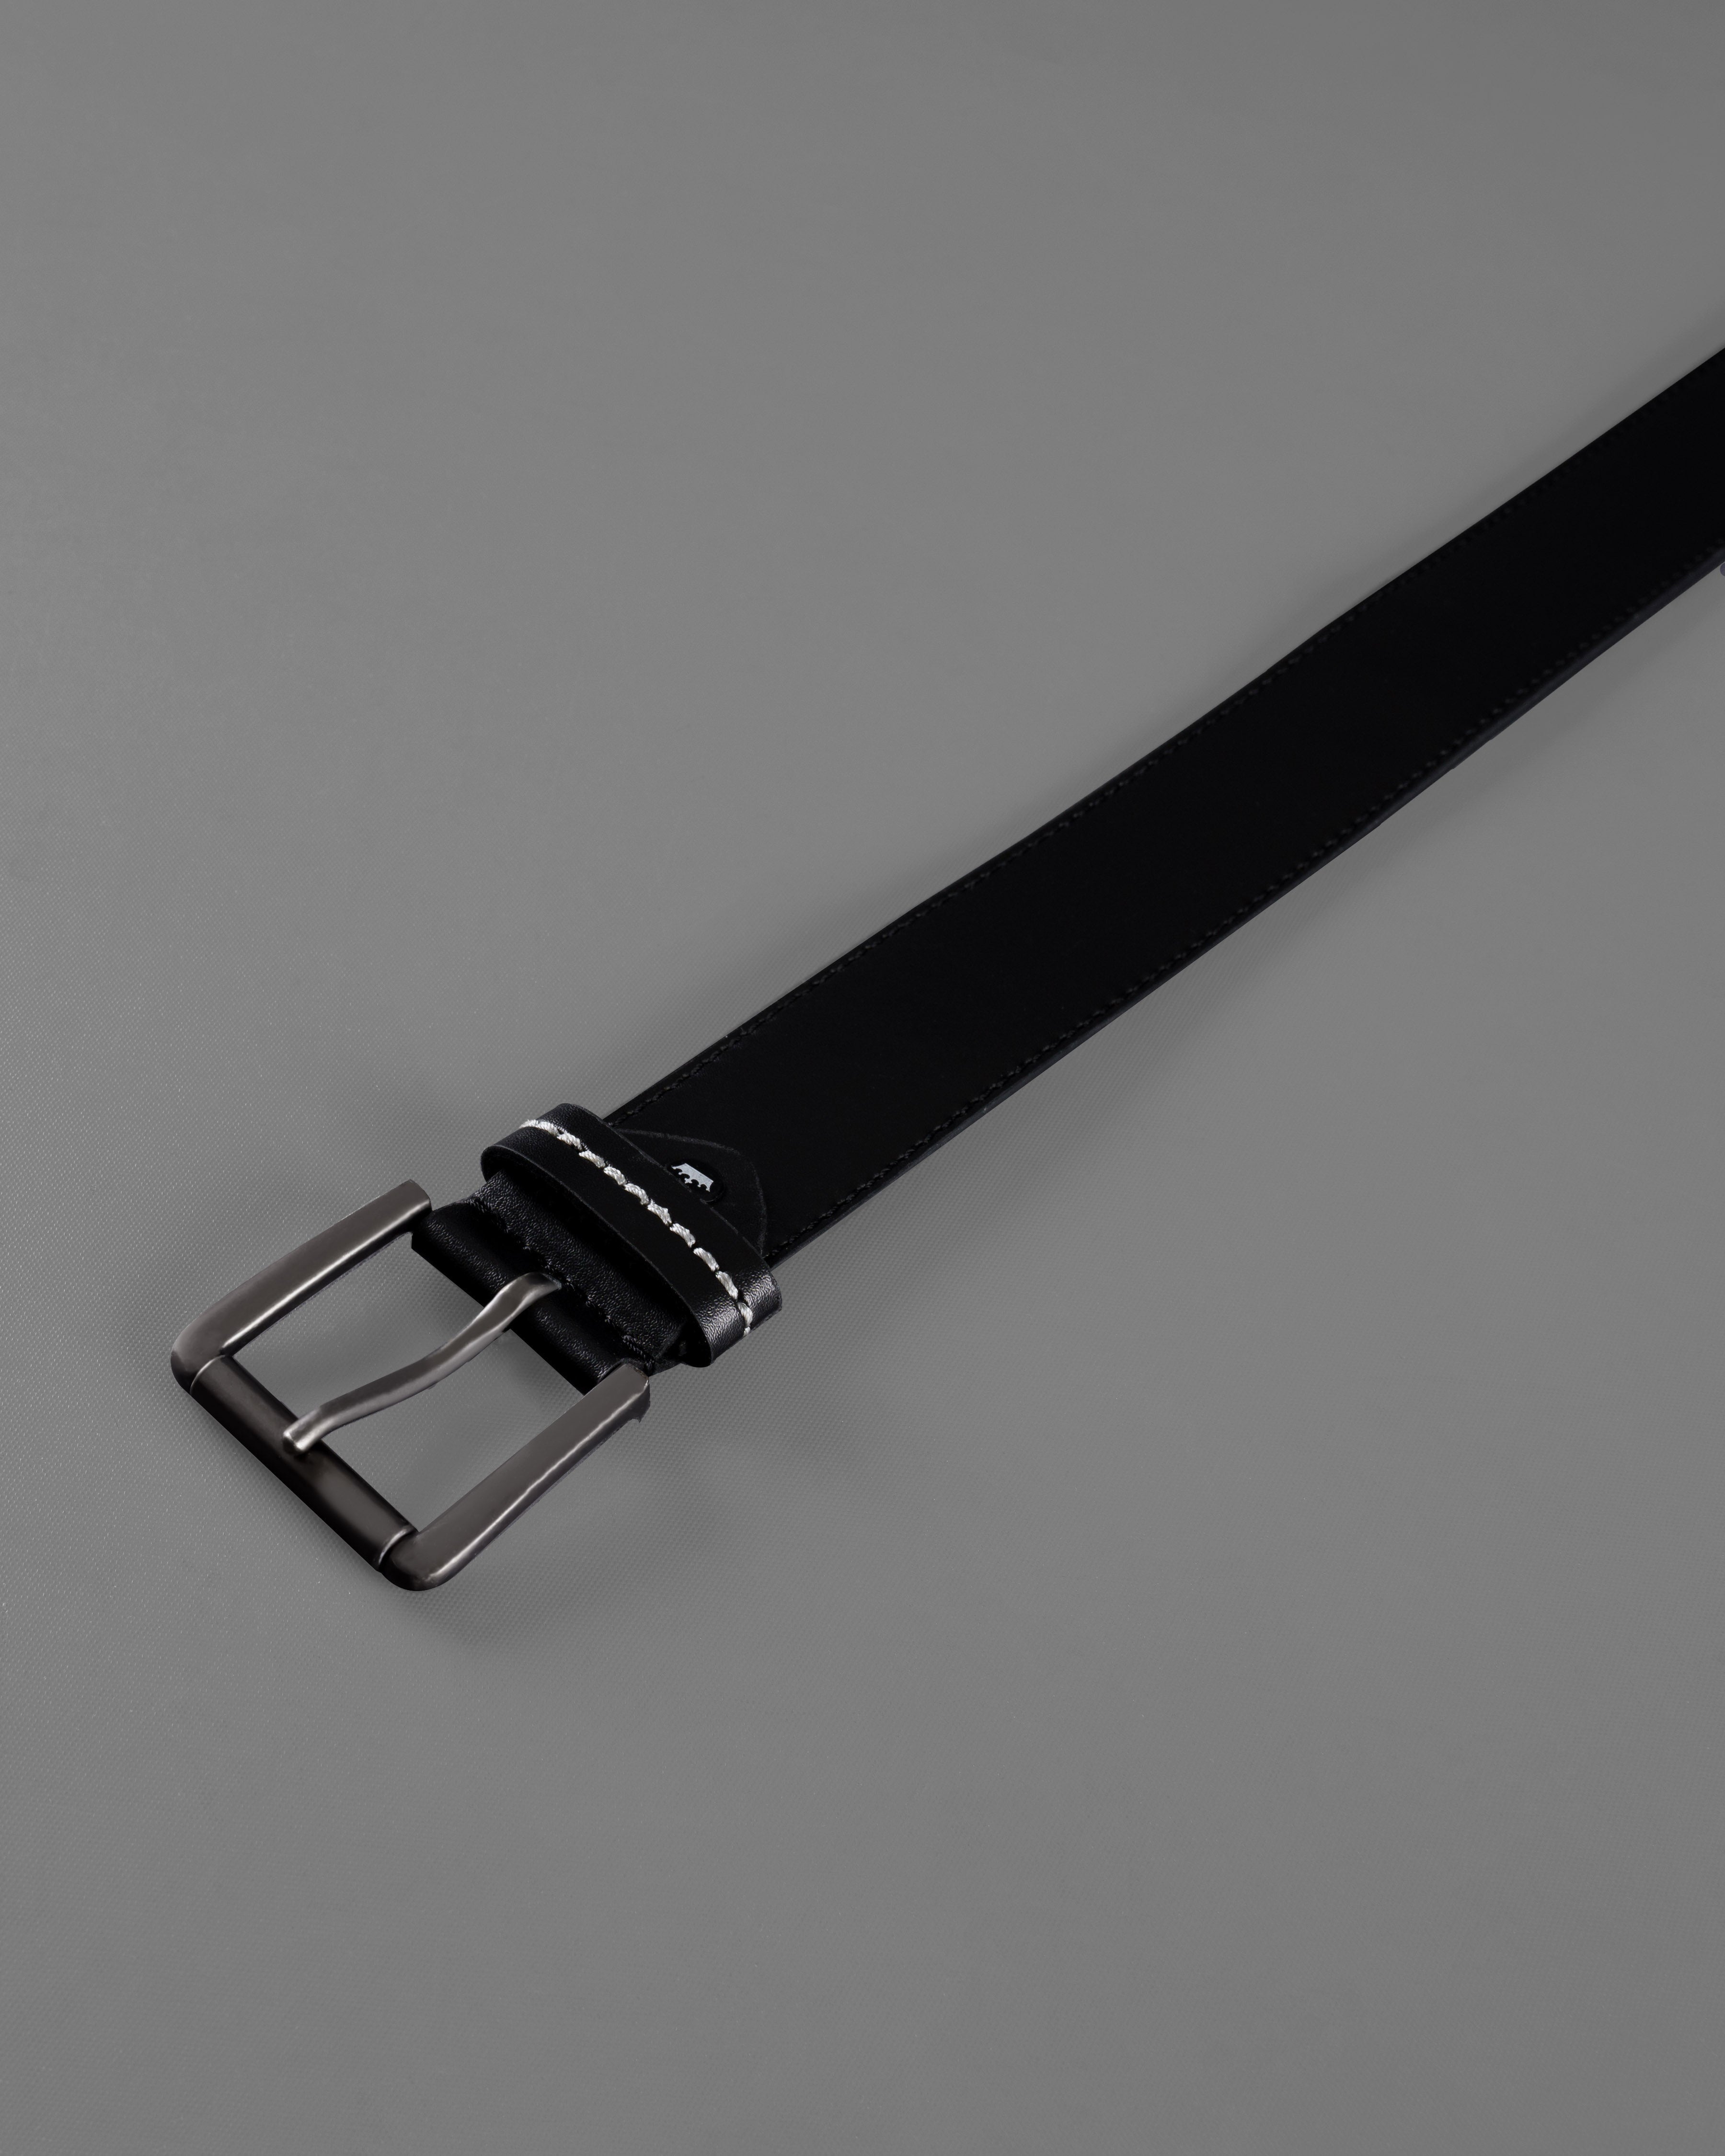 Jade Black with Metallic Buckle Leather FreeLightweight Handcrafted Belt BT102-28, BT102-30, BT102-32, BT102-34, BT102-36, BT102-38